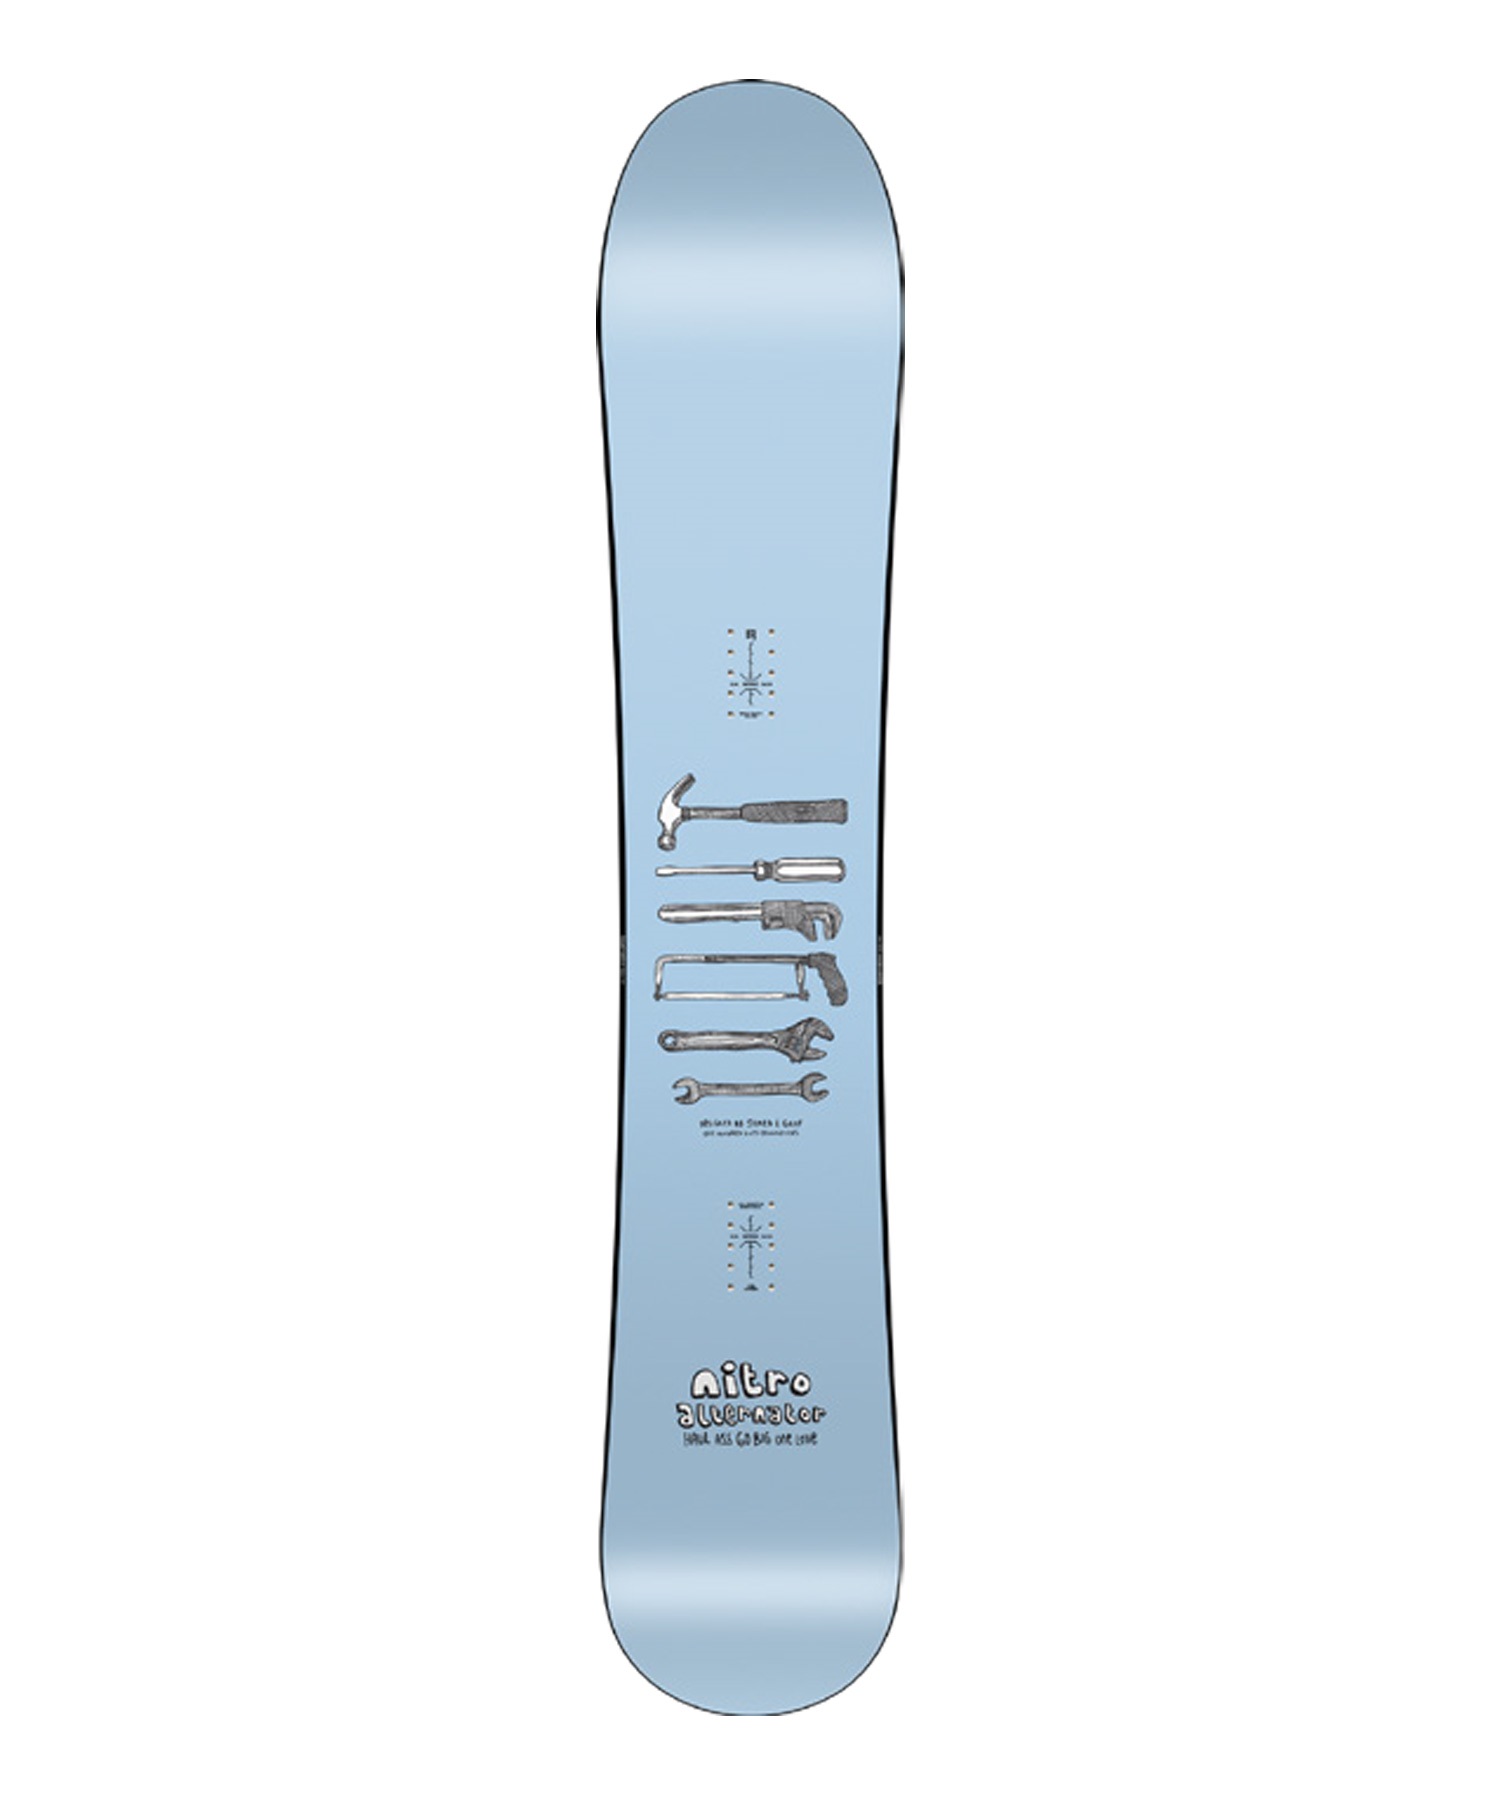 スノーボード 板 メンズ NITRO ナイトロ ALTERNATOR 23-24モデル ムラサキスポーツ KK D18(ONECOLOR-157cm)